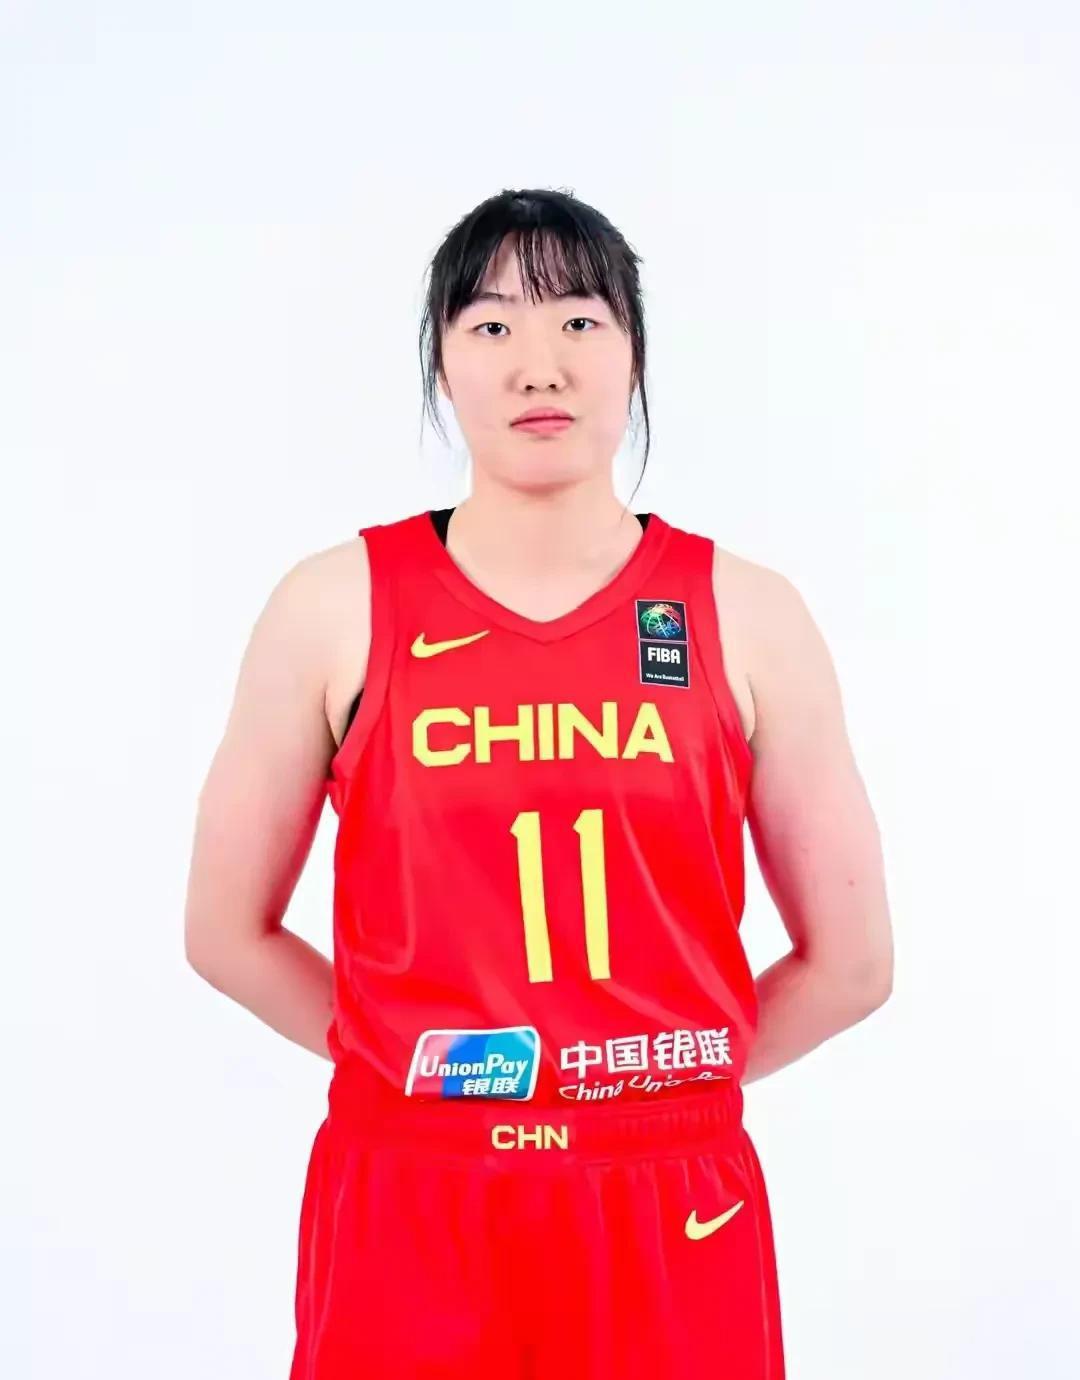 中国女篮89-44大胜黎巴嫩，看完比赛，我发现3个惊人的现象：
1、在夺得世界杯(1)